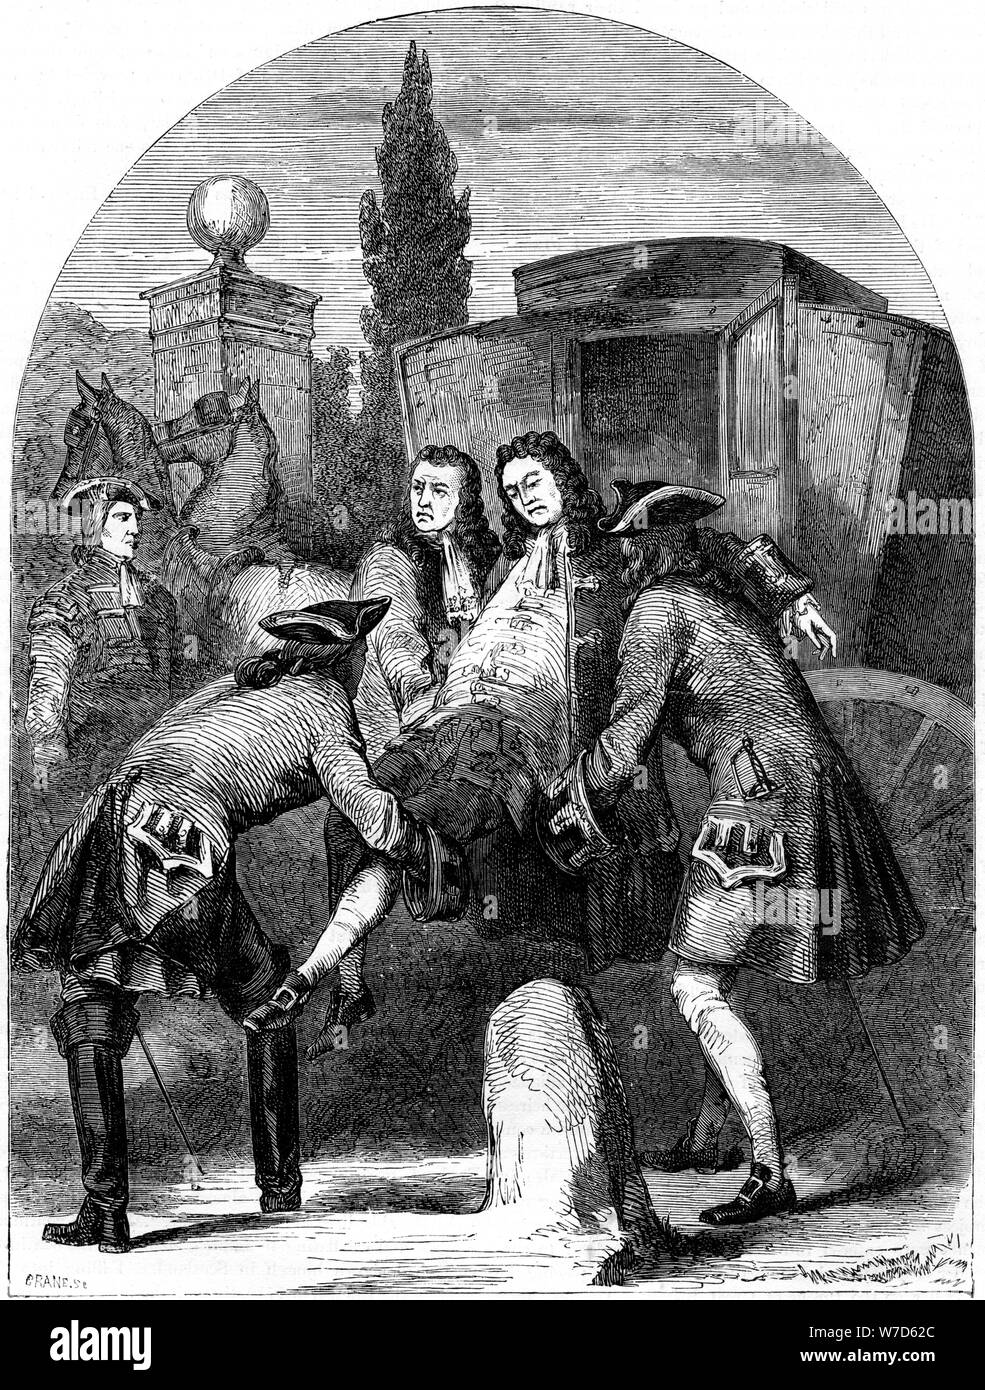 King George I, die von einem Sitz der apoplex angegriffen. Artist: Kran Stockfoto